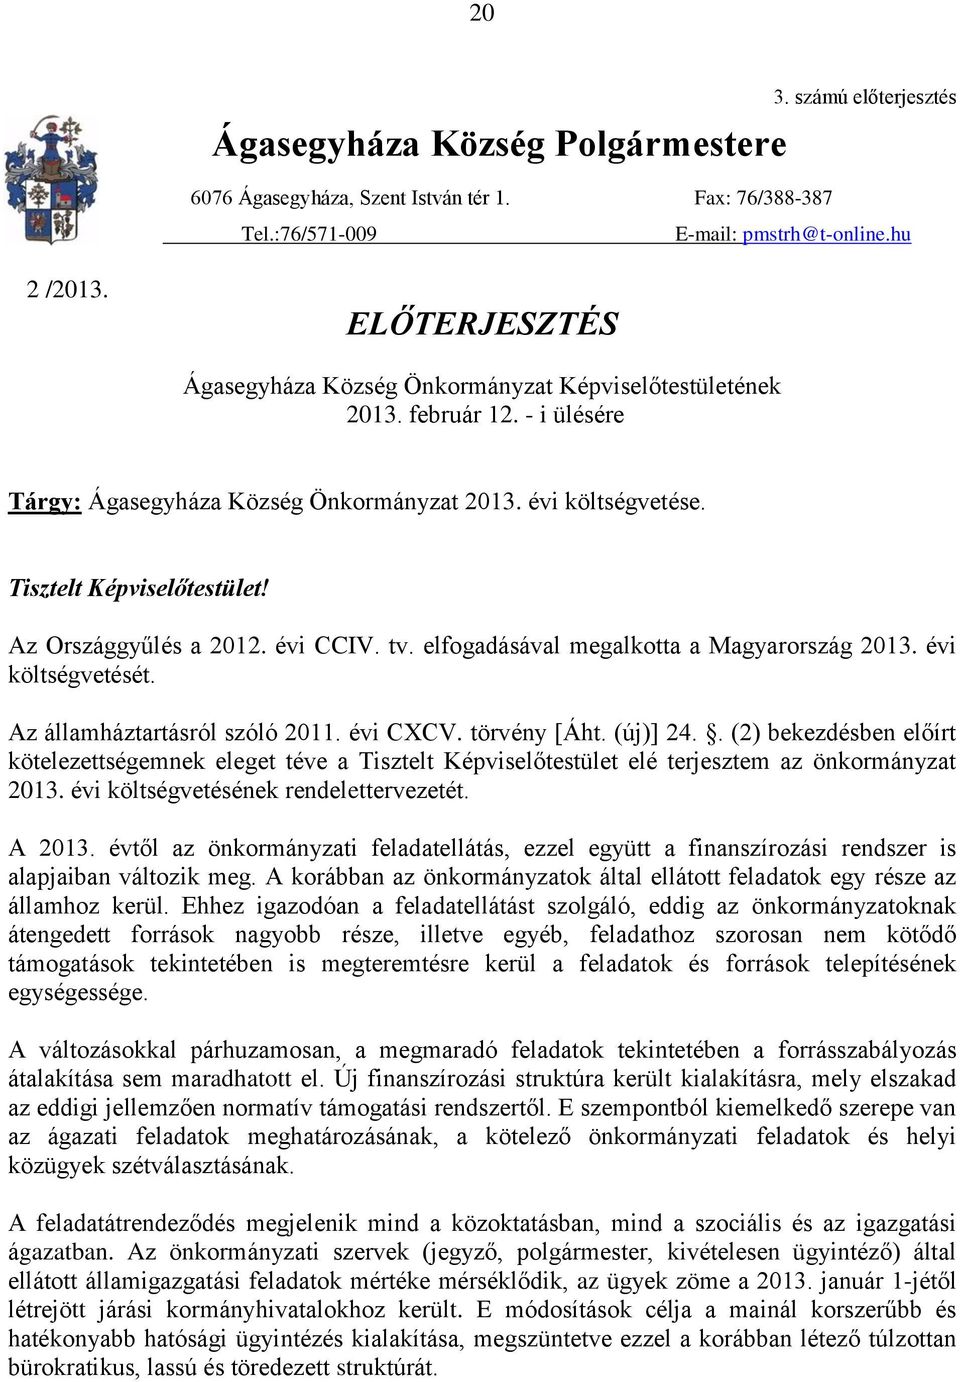 Az Országgyűlés a 2012. évi CCIV. tv. elfogadásával megalkotta a Magyarország 2013. évi költségvetését. Az államháztartásról szóló 2011. évi CXCV. törvény [Áht. (új)] 24.